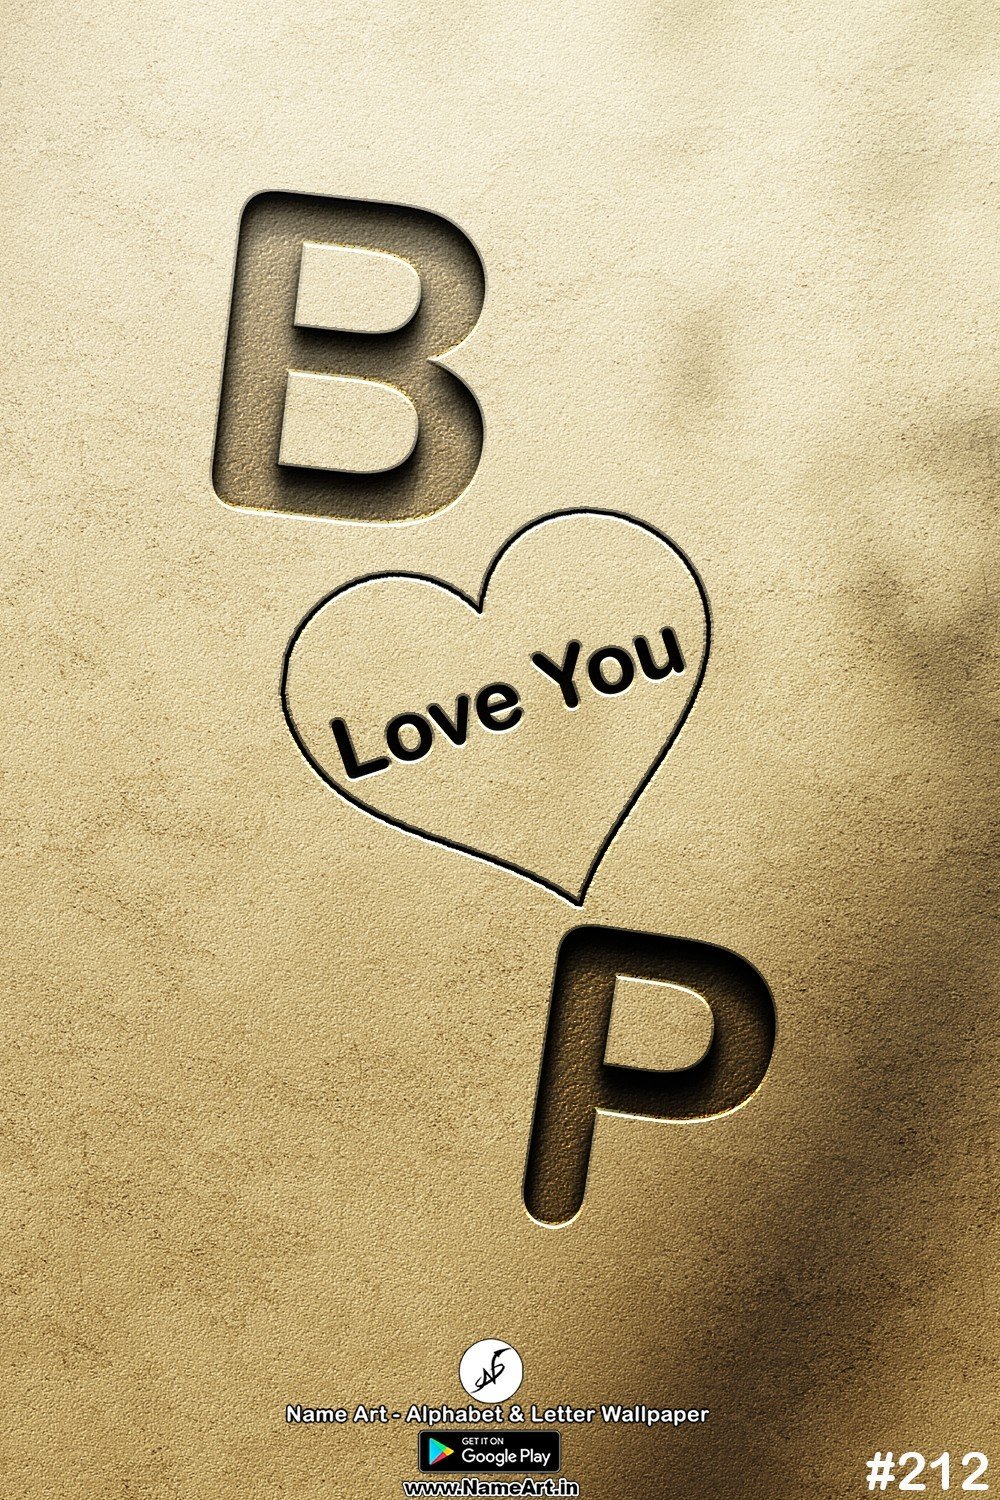 BP | Whatsapp Status DP BP | BP Love Status Cute Couples Whatsapp Status DP !! | New Whatsapp Status DP BP Images |